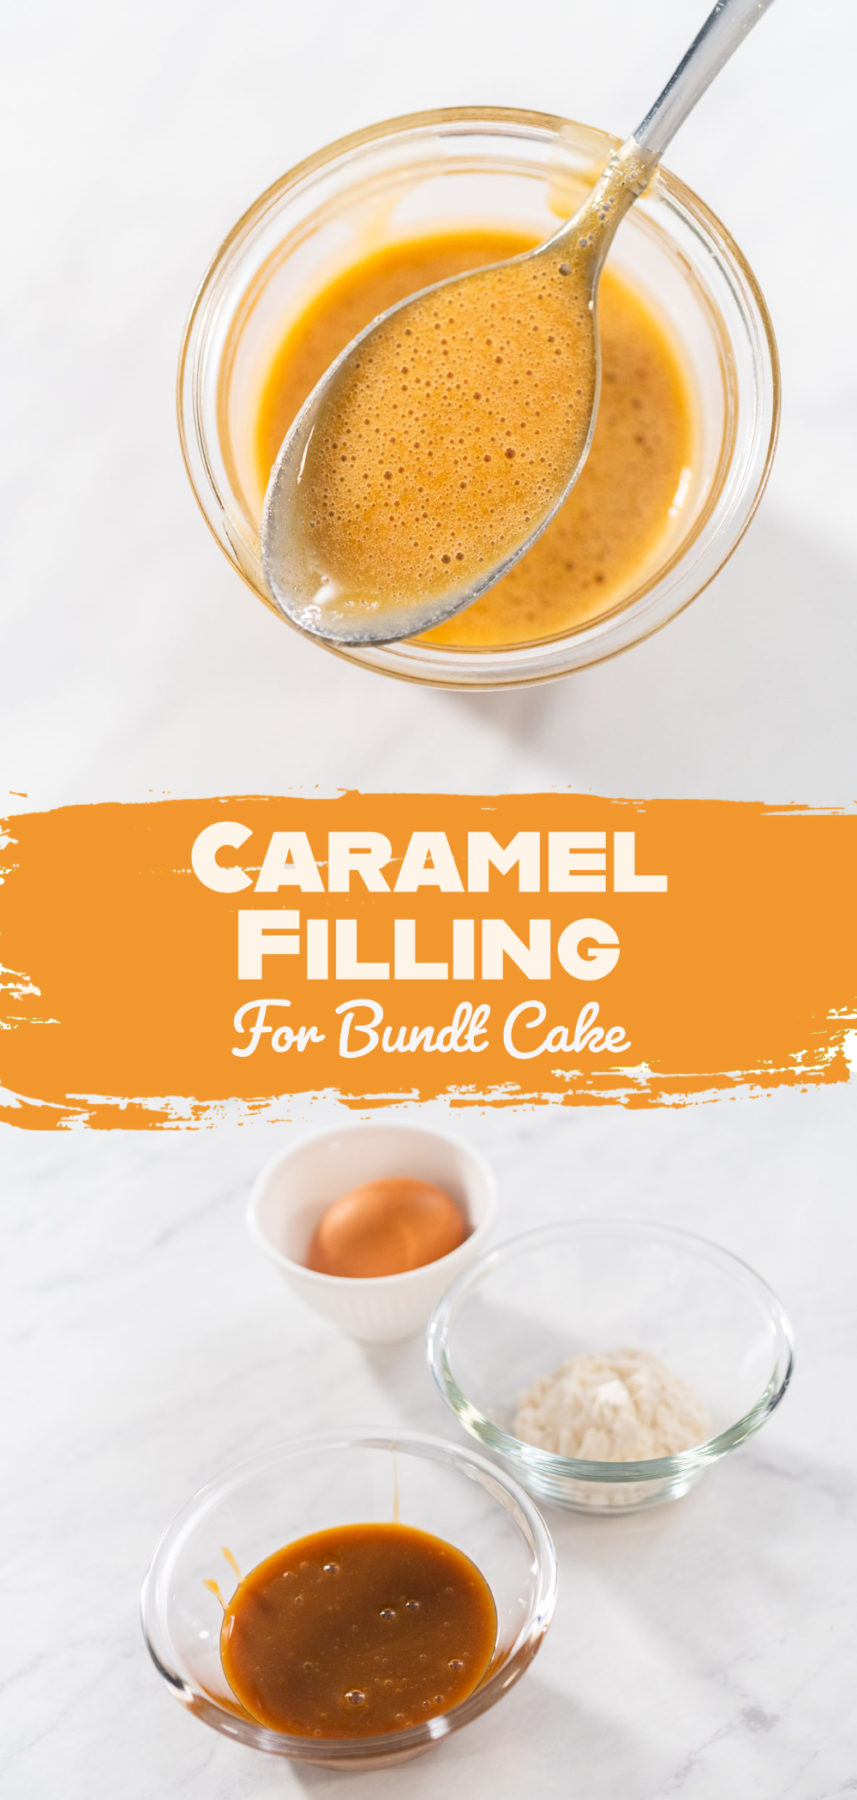 Caramel Filling For Bundt Cake